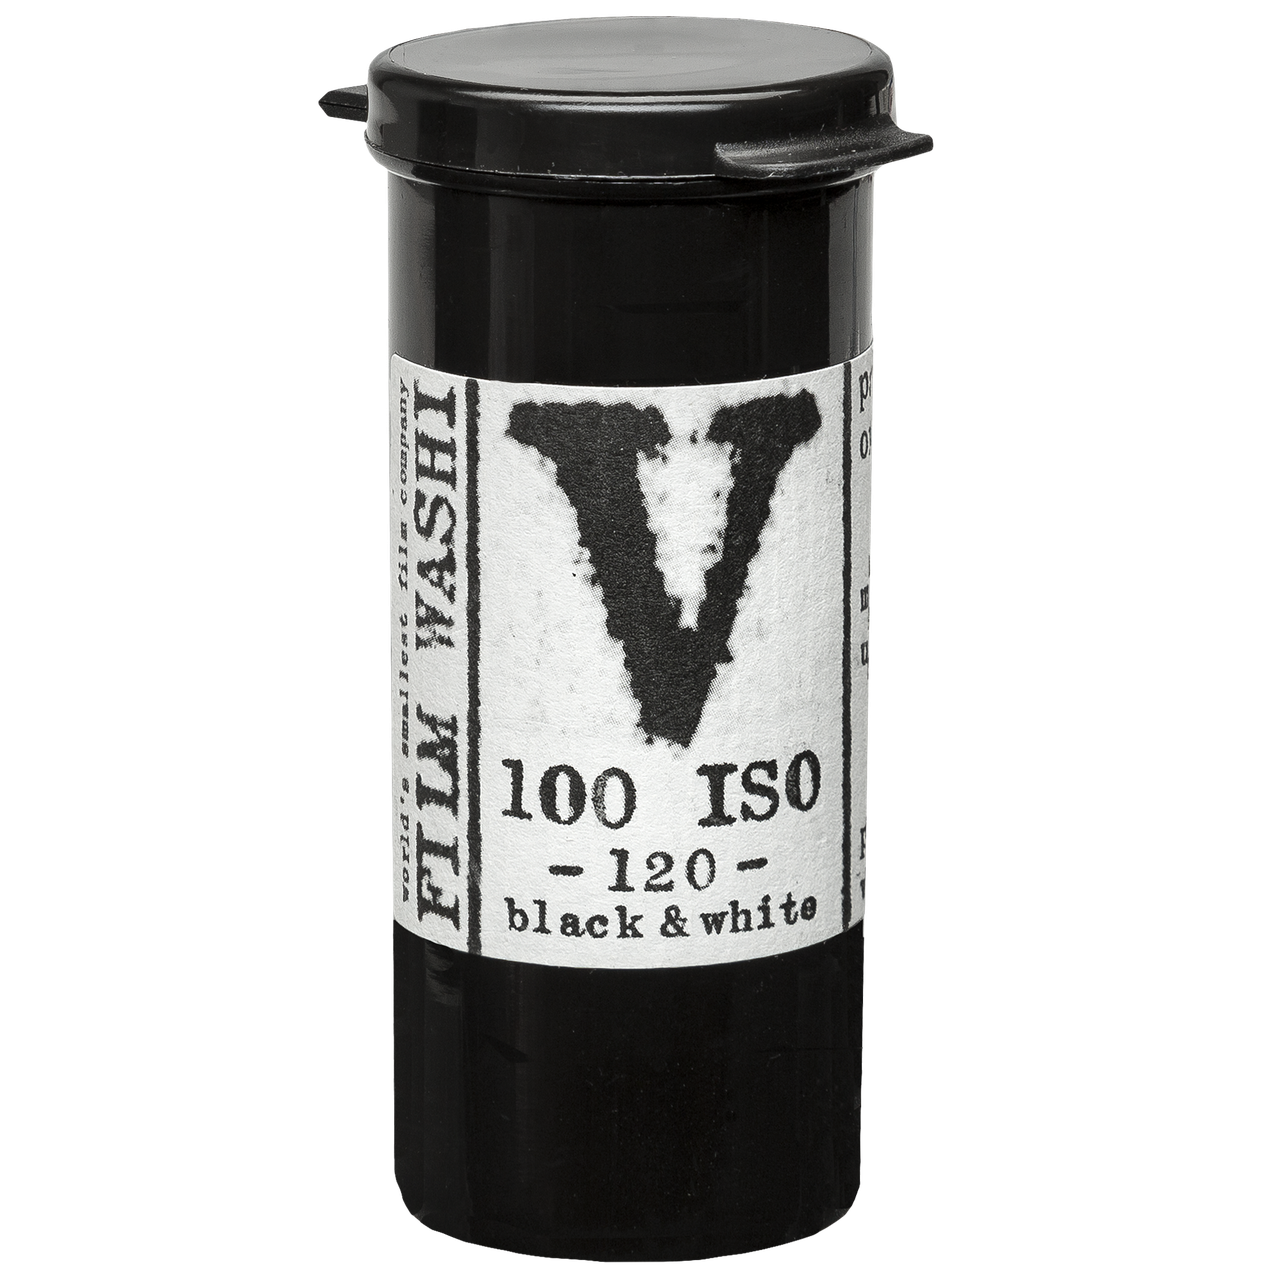 WASHI Film "V" - 100 iso - ortho Format 120 Rollfilm